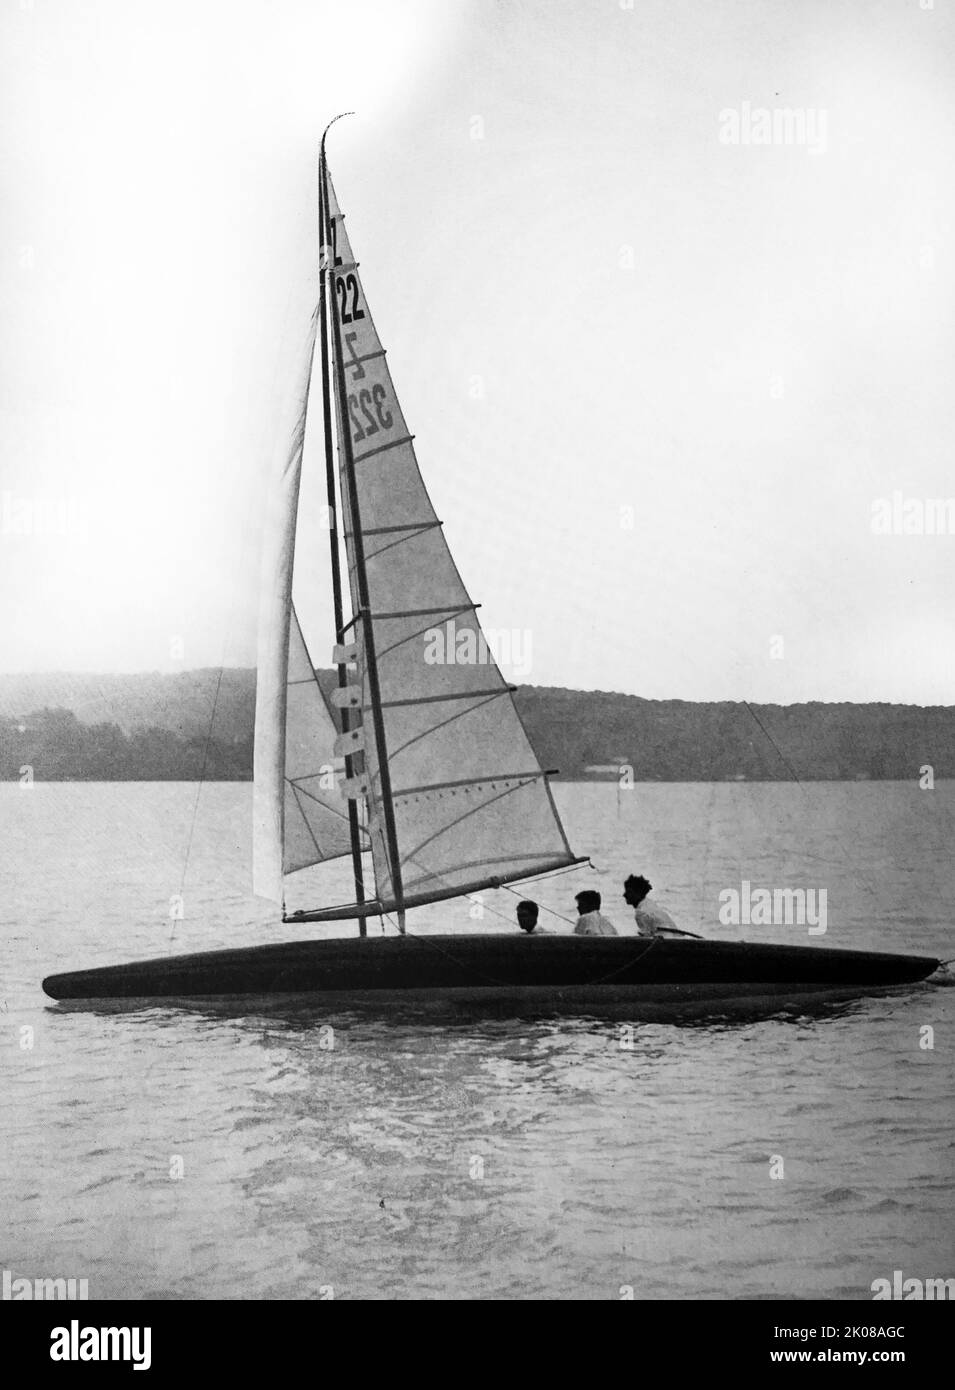 Aero: Il pilota di successo a forma di balena sul lago Starnberg in Baviera, Germania. Fotografia in bianco e nero dello yacht a vela Foto Stock